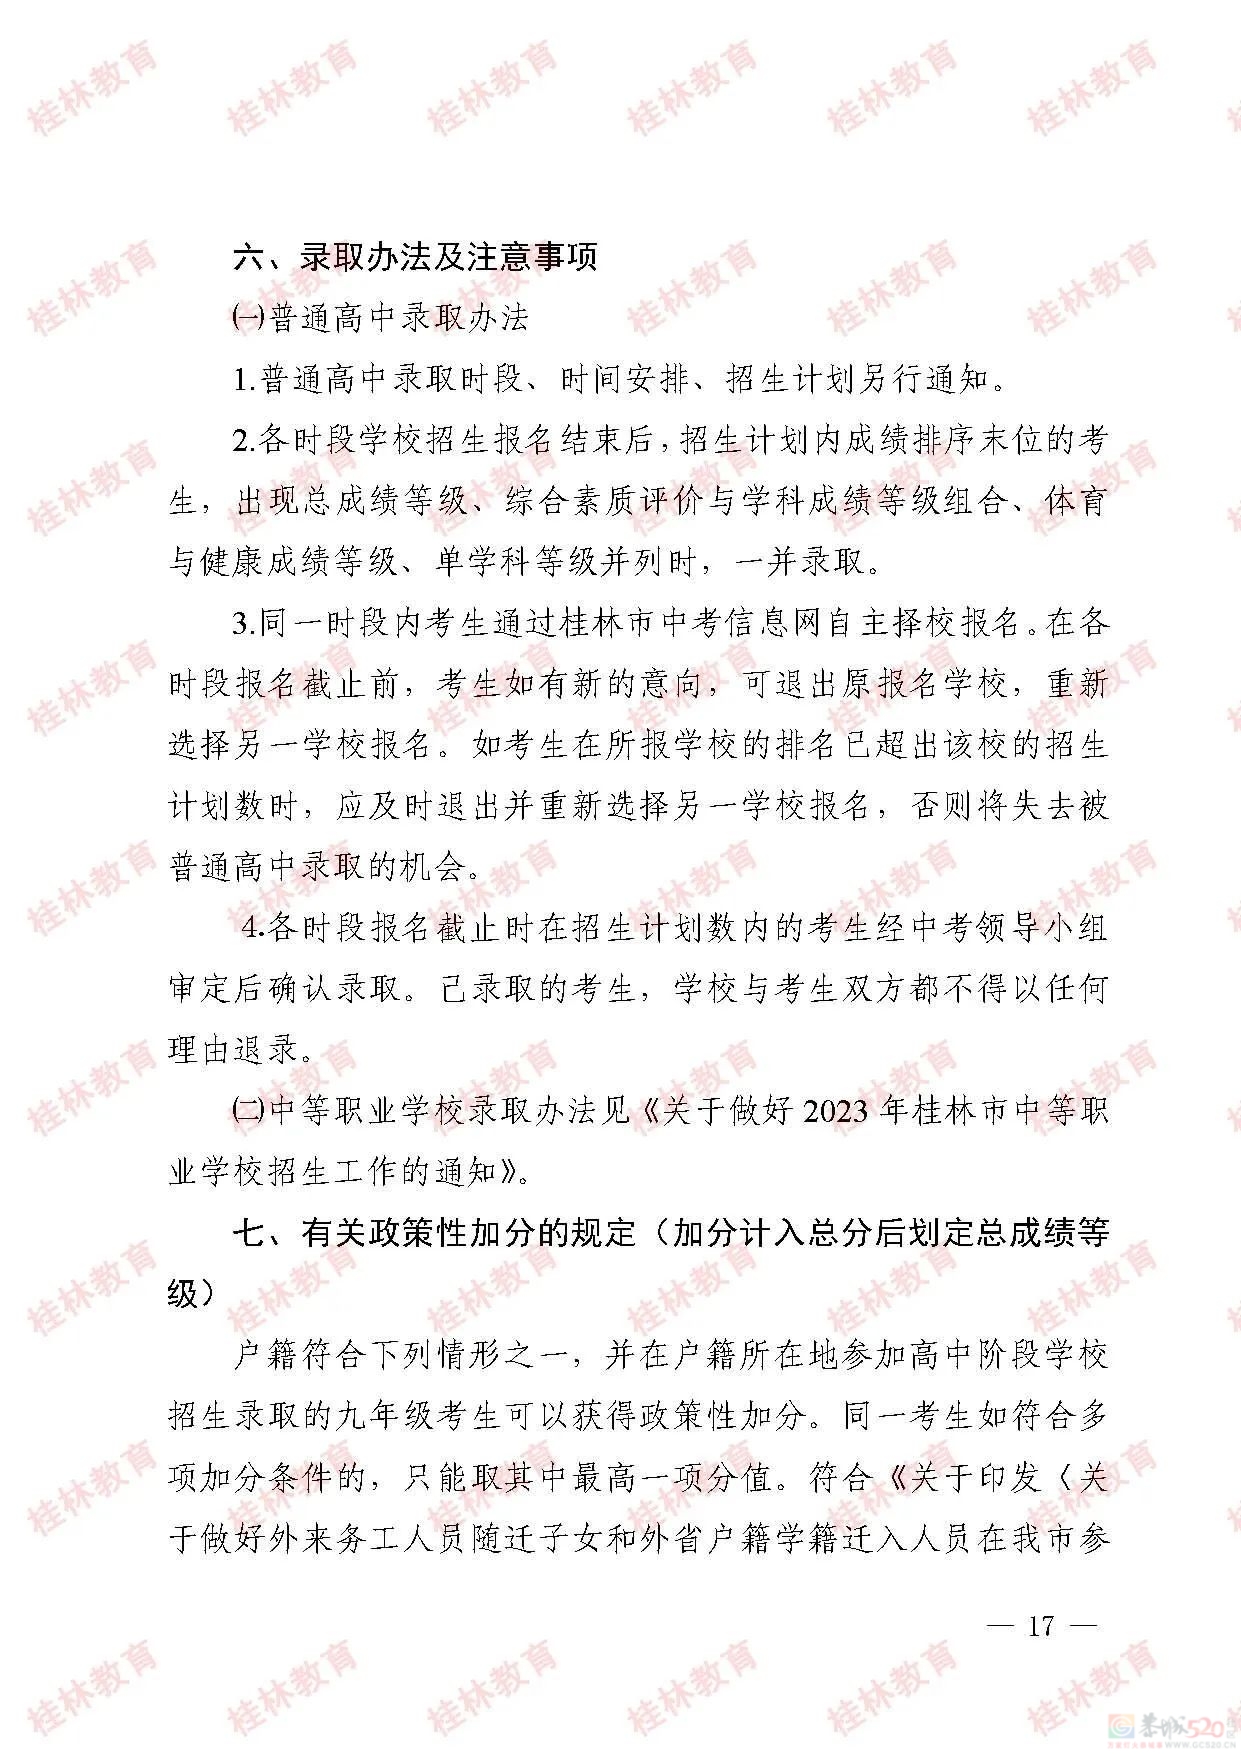 桂林市2023年初中学业考试与高中阶段学校招生工作方案发布809 / 作者:论坛小编01 / 帖子ID:307086